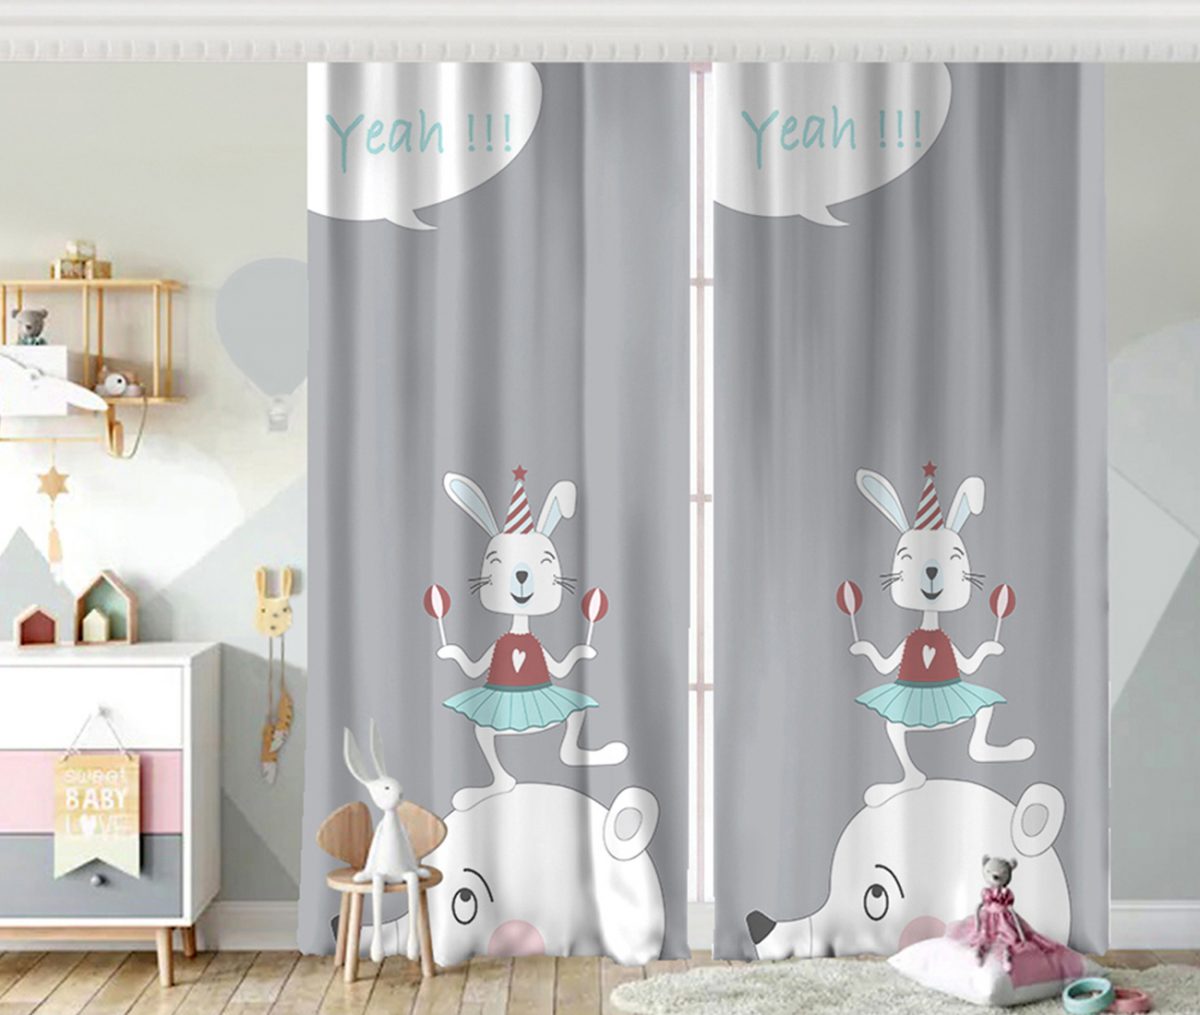 Sevimli Sirk Tavşanı Çocuk Odası Fon Perde Realhomes